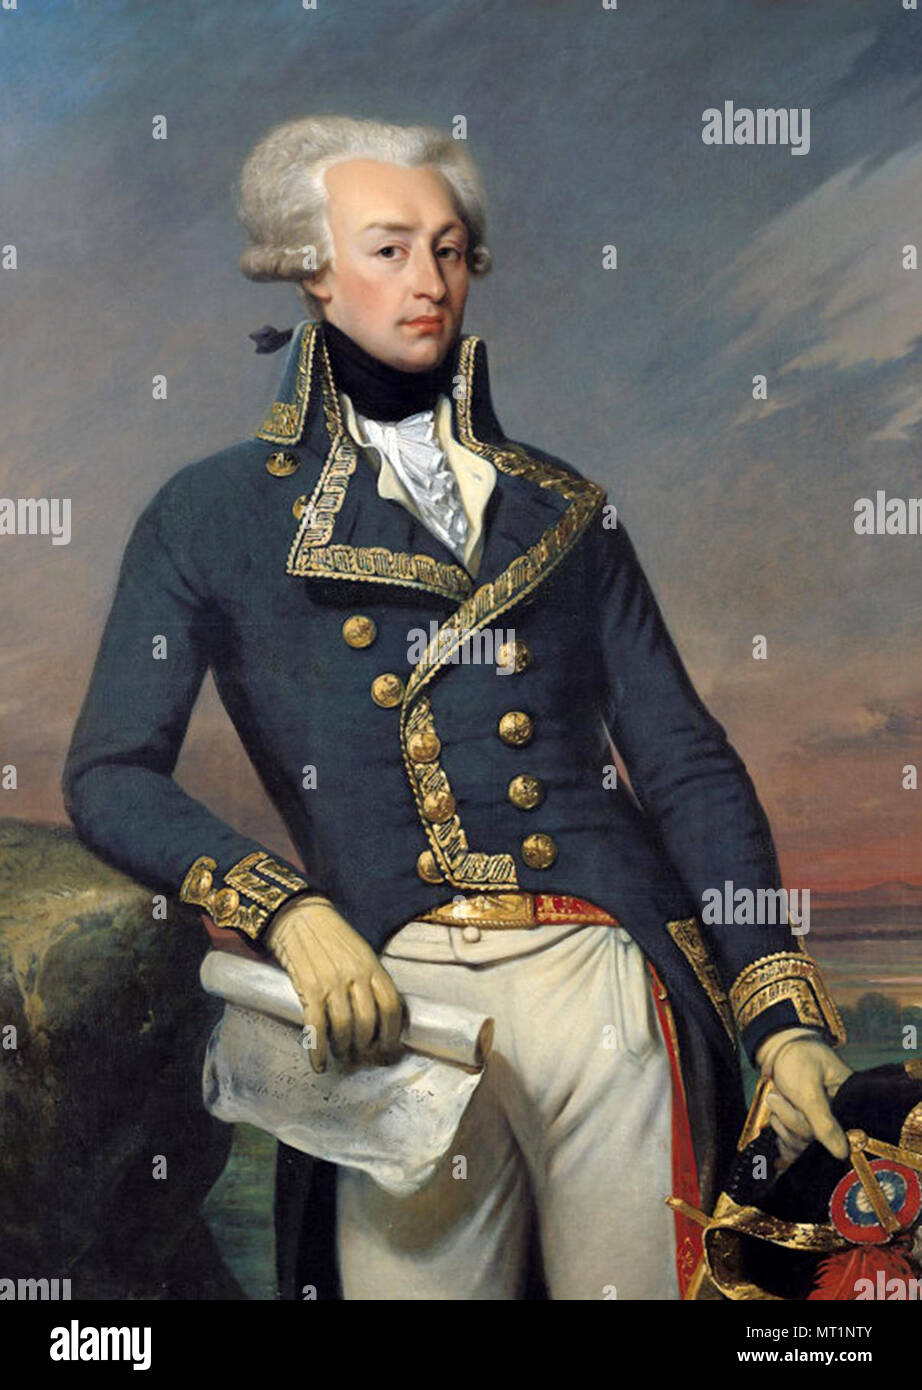 Gilbert du Motier Marquis de Lafayette, Marie-Joseph Paul Yves Roch Gilbert du Motier, Marquis de Lafayette (1757 - 1834), aristocrate français, militaire Banque D'Images